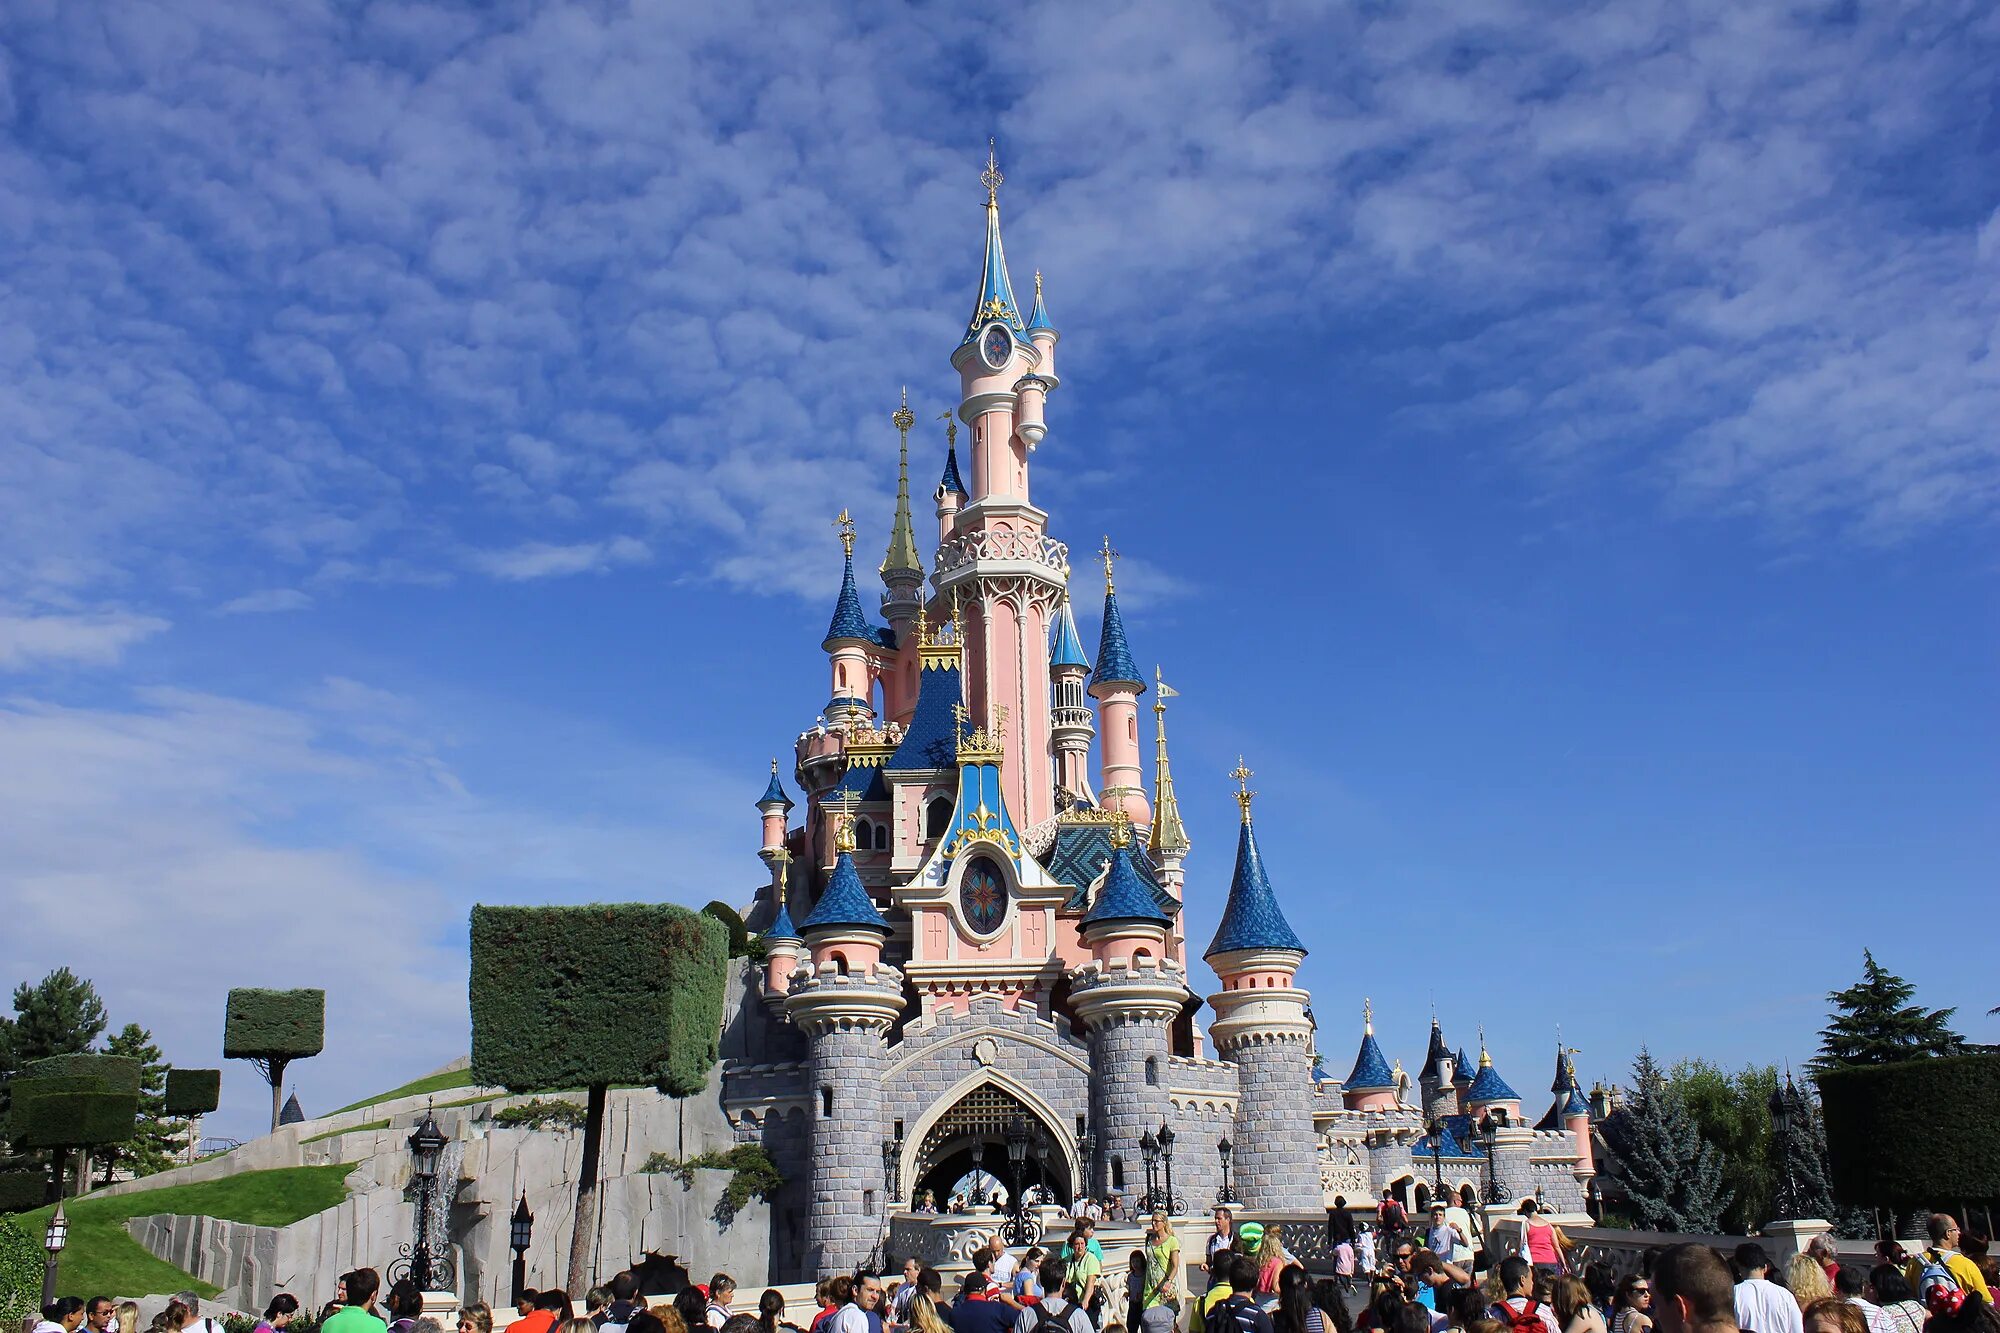 Вход в диснейленд. Диснейленд Париж Disneyland Paris. Парижский Диснейленд замок спящей красавицы. Парк Уолт Дисней в Париже. Диснейленд Париж Диснейленд парк.